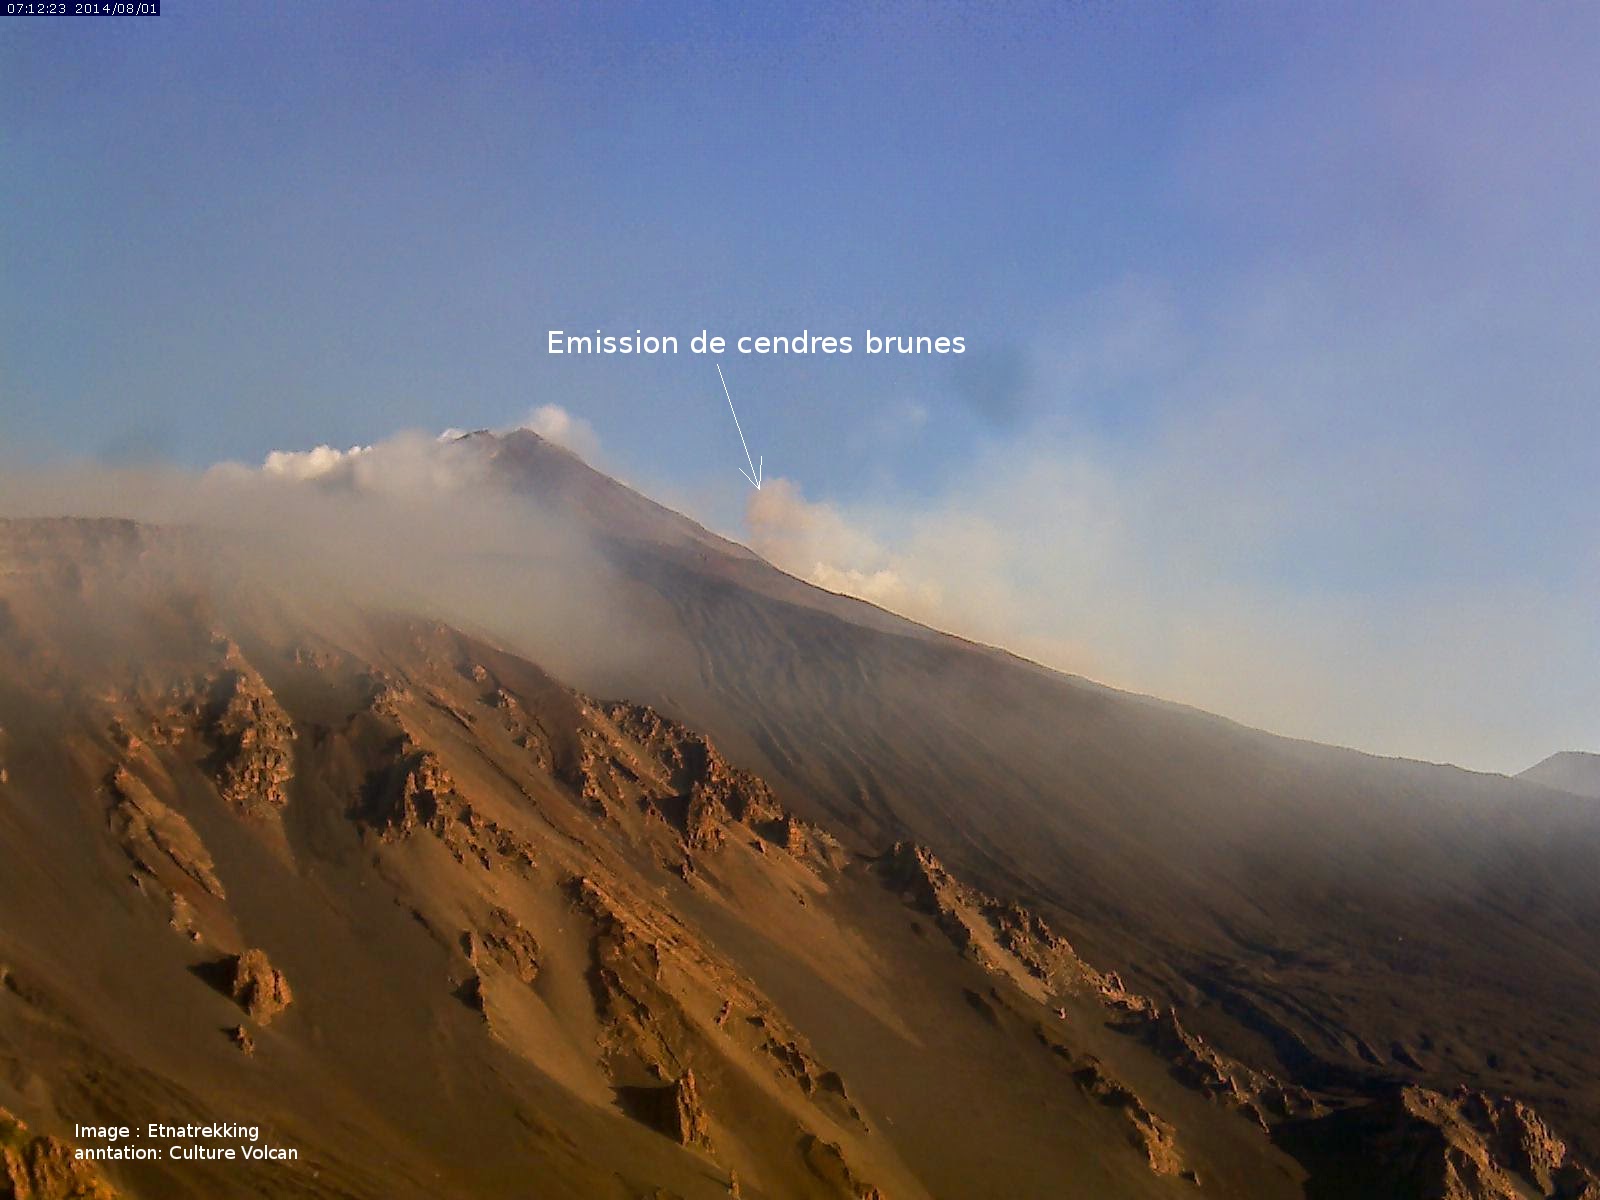 Second panache de cendres sur le volcan Tungurahua, 01 août 2014